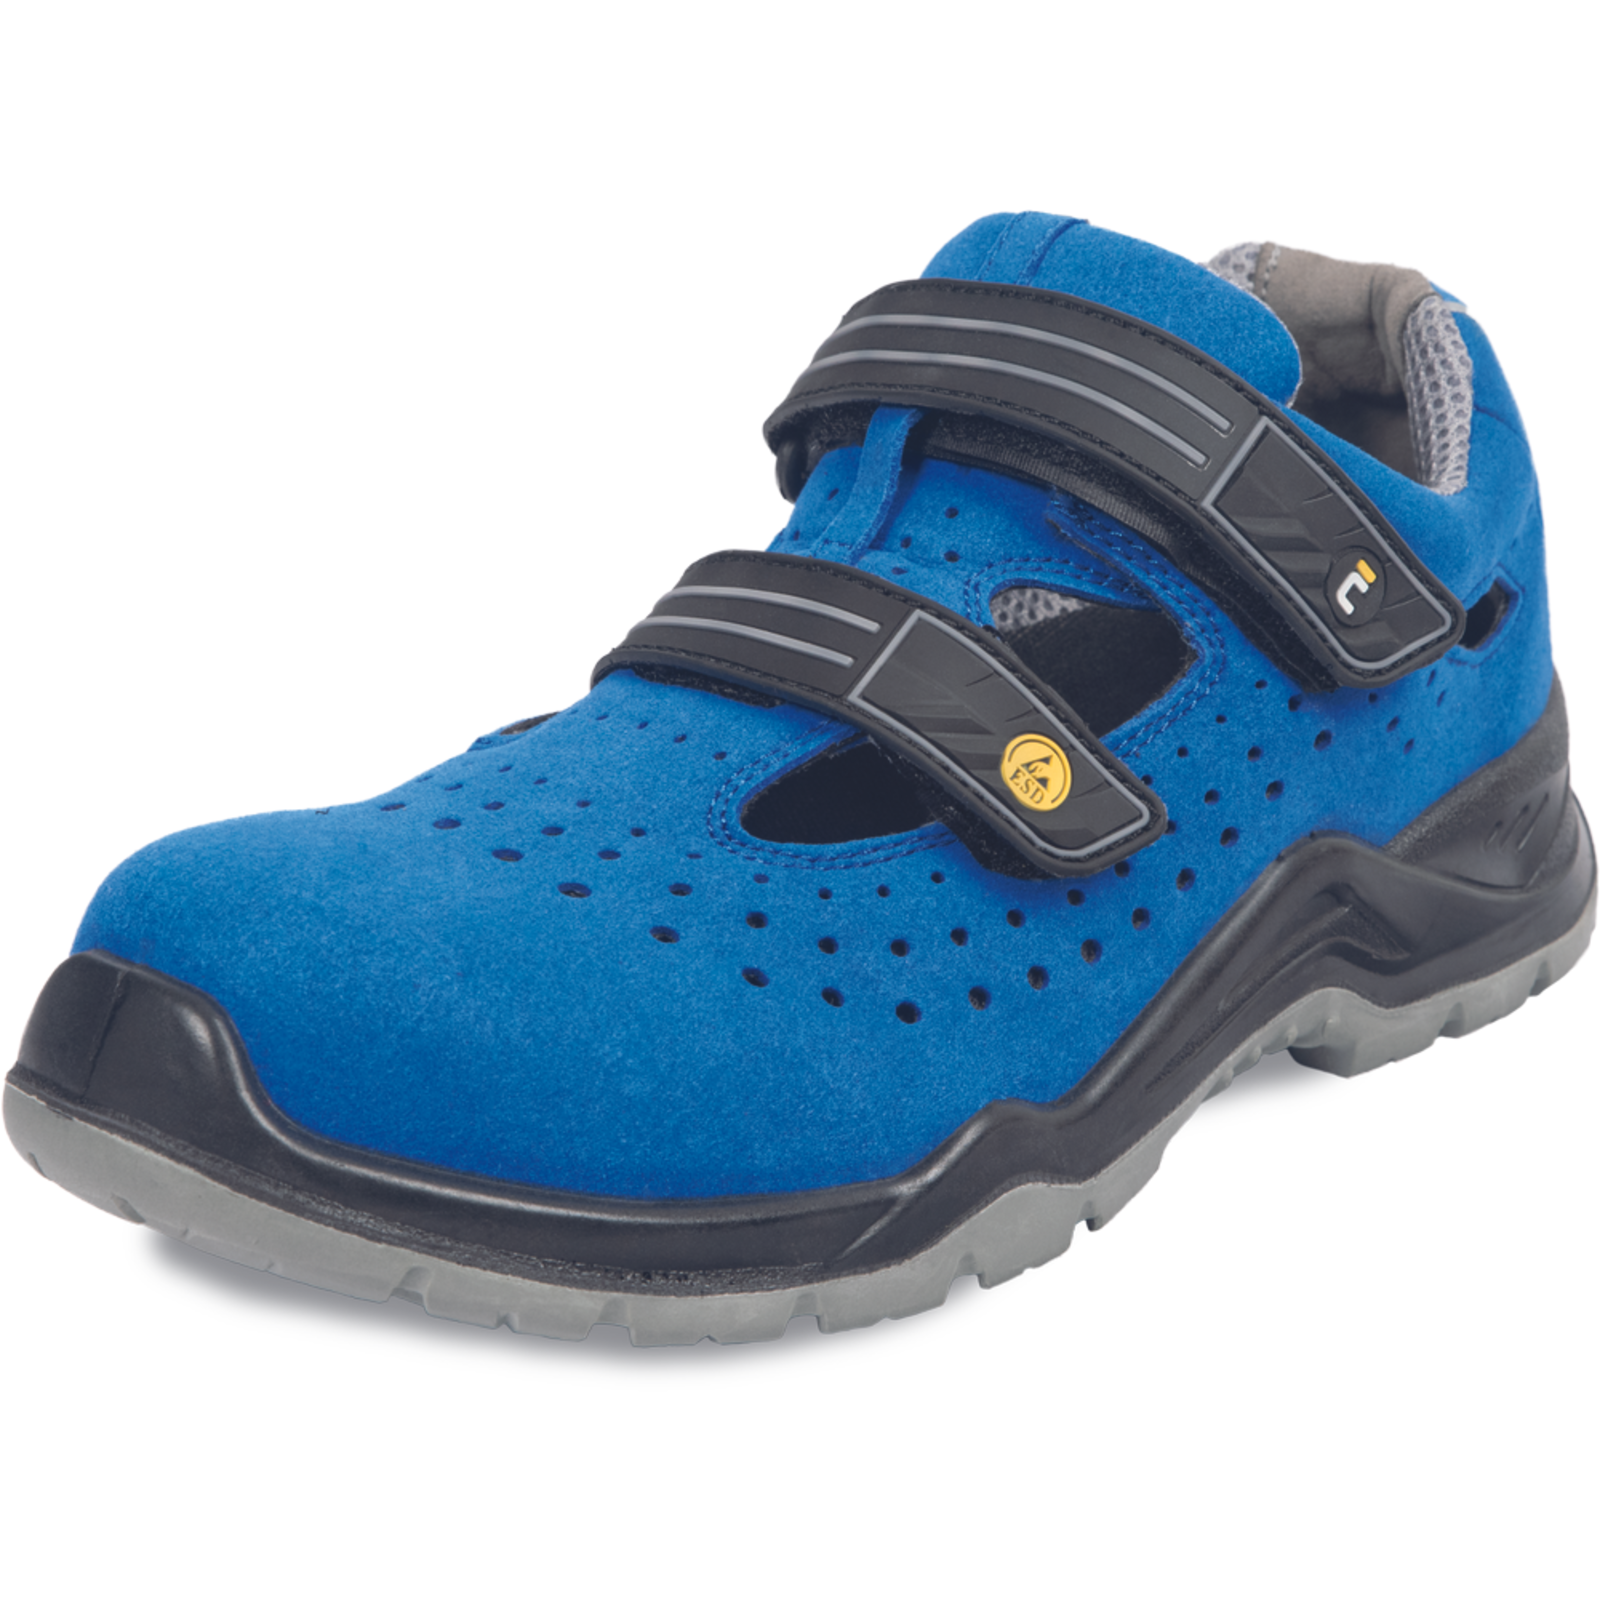 Bezpečnostné pracovné sandále Cerva Hagewill S1P - veľkosť: 43, farba: modrá